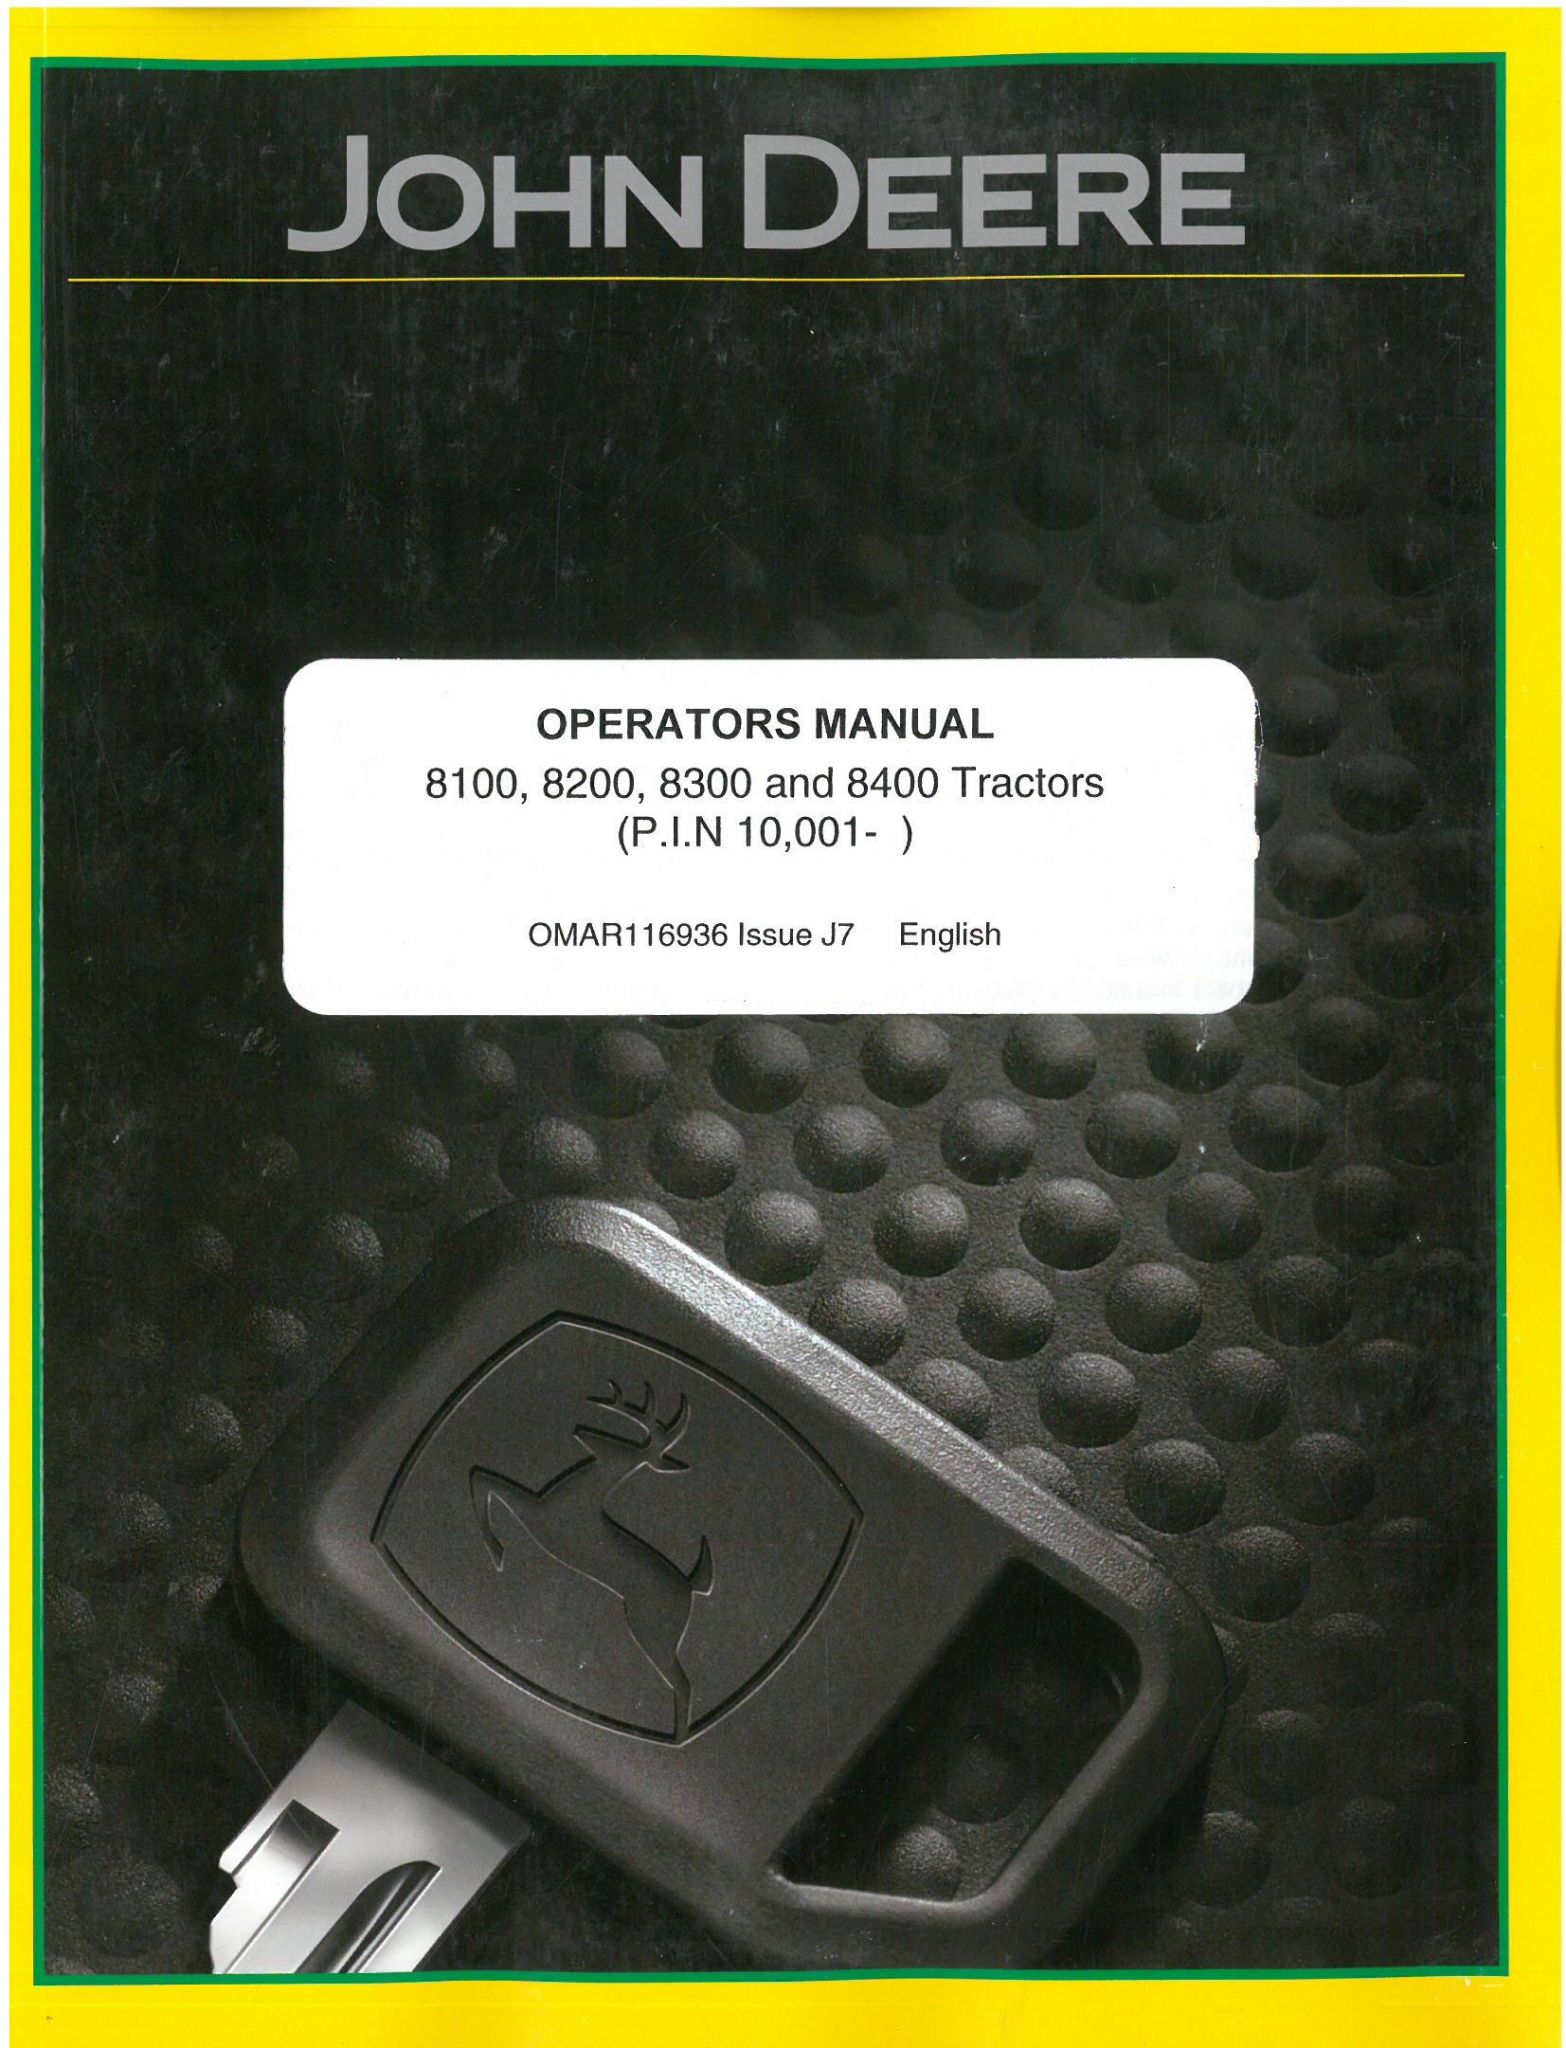 John Deere Tractor 8100 8200 8300 8400 Operators Manual